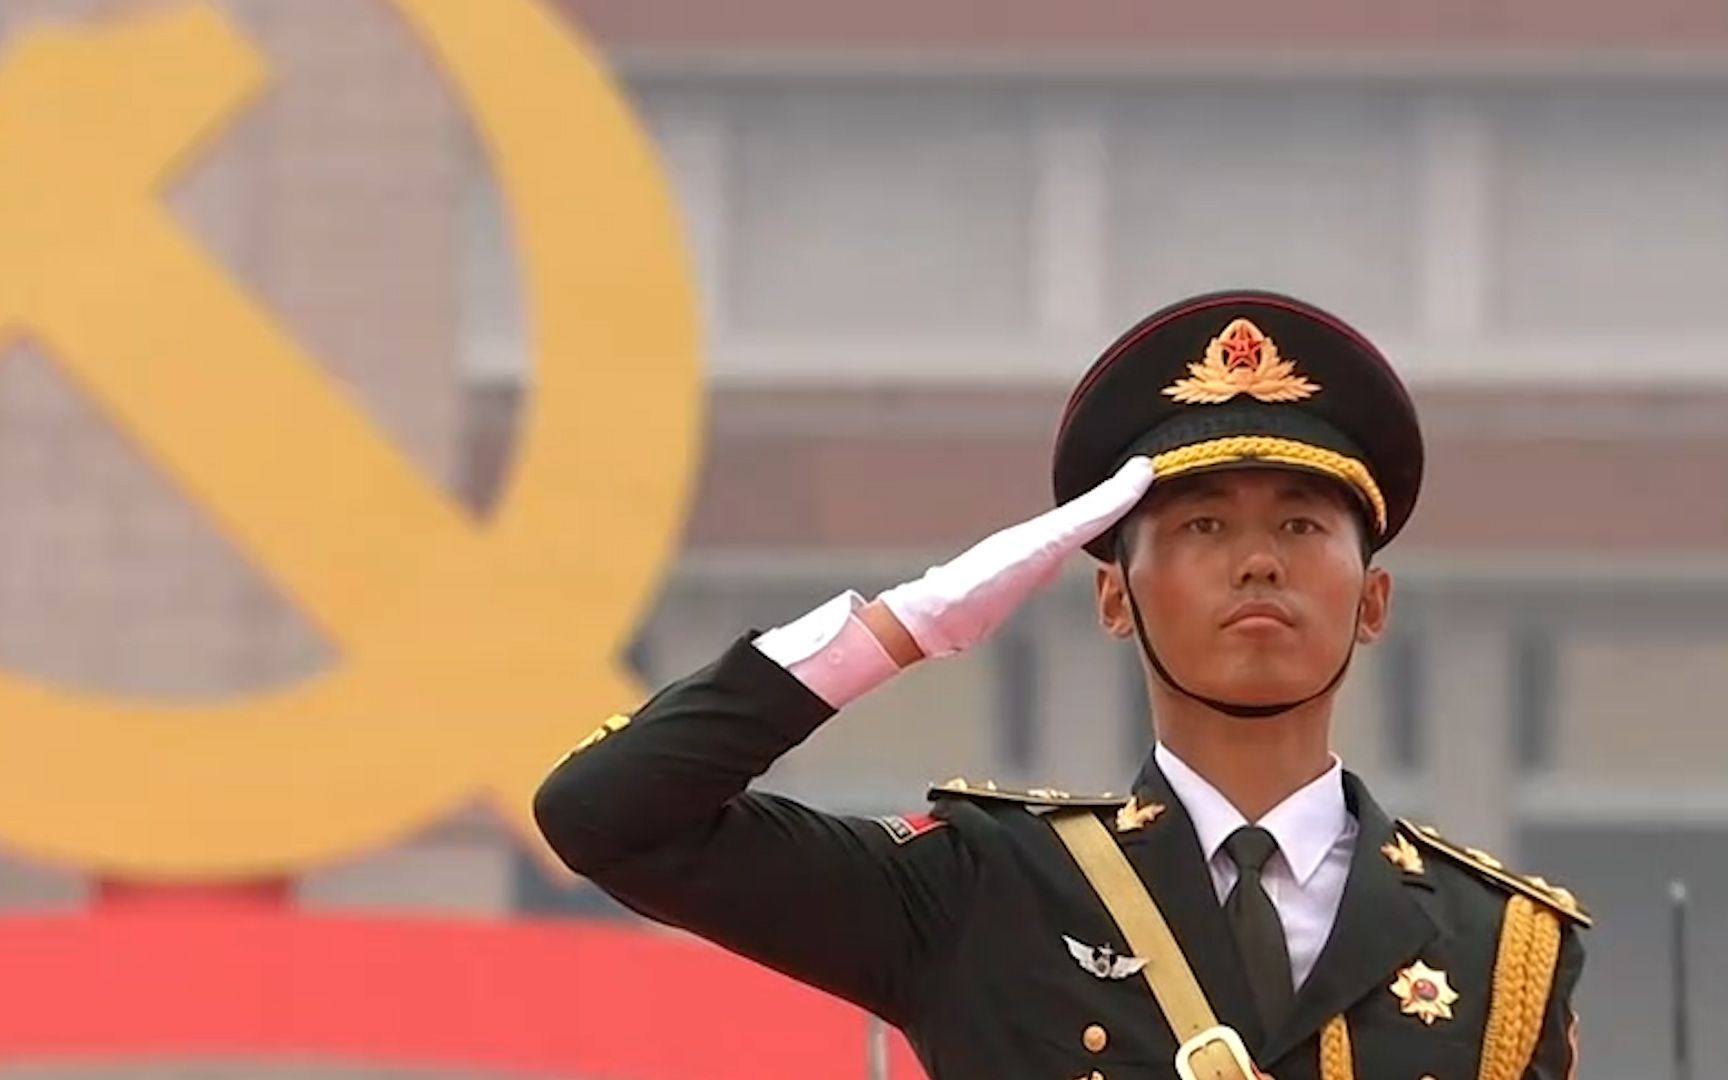 中国共产党成立100周年 天安门广场升旗仪式观众挥舞手中的国旗欢呼